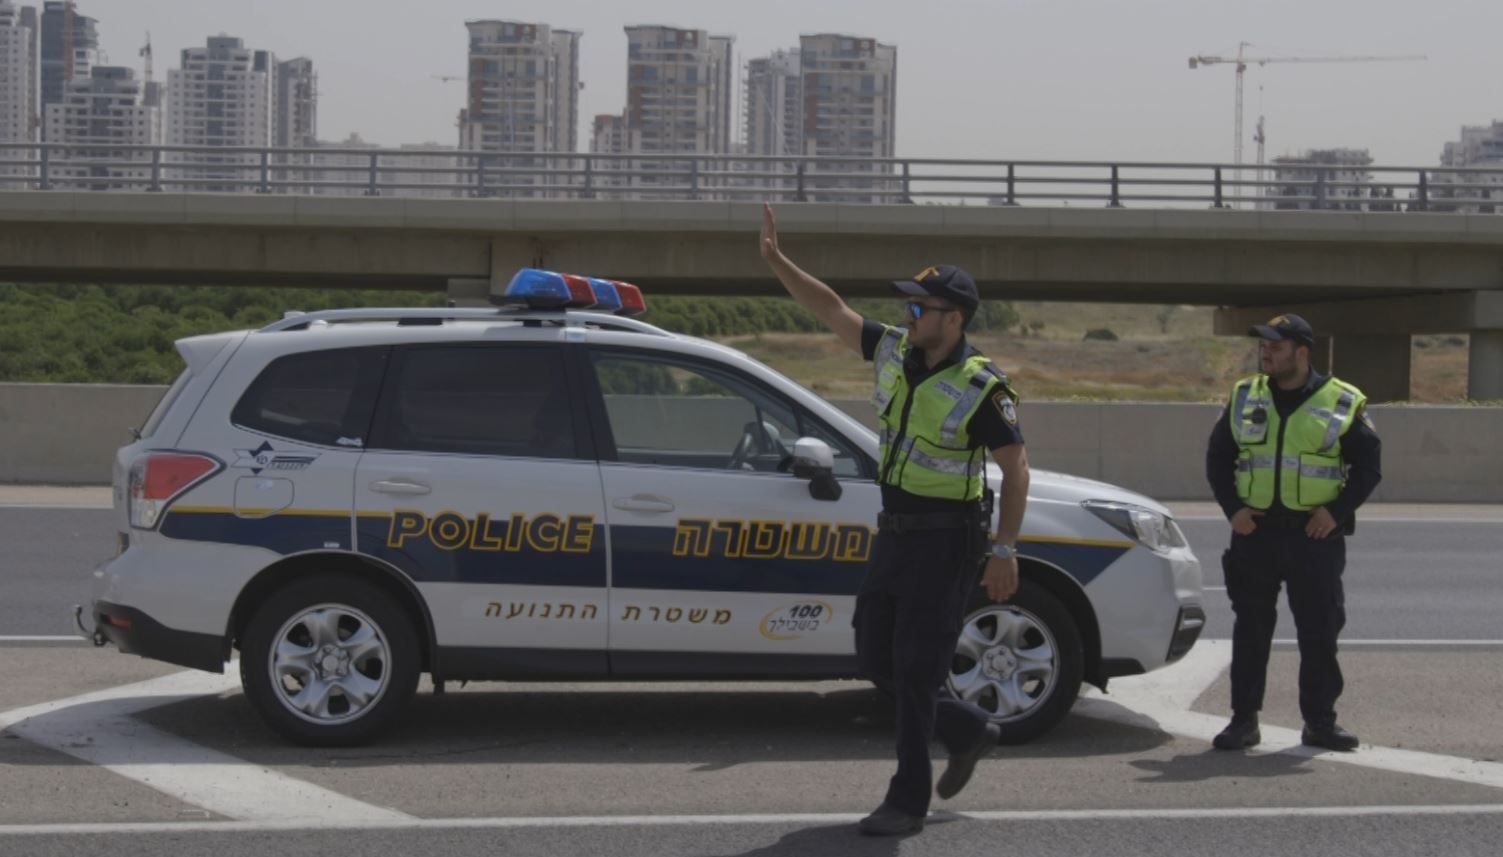 שוטר התנועה שעצר את התנועה לטובת היולדת. צילום: דוברות המשטרה